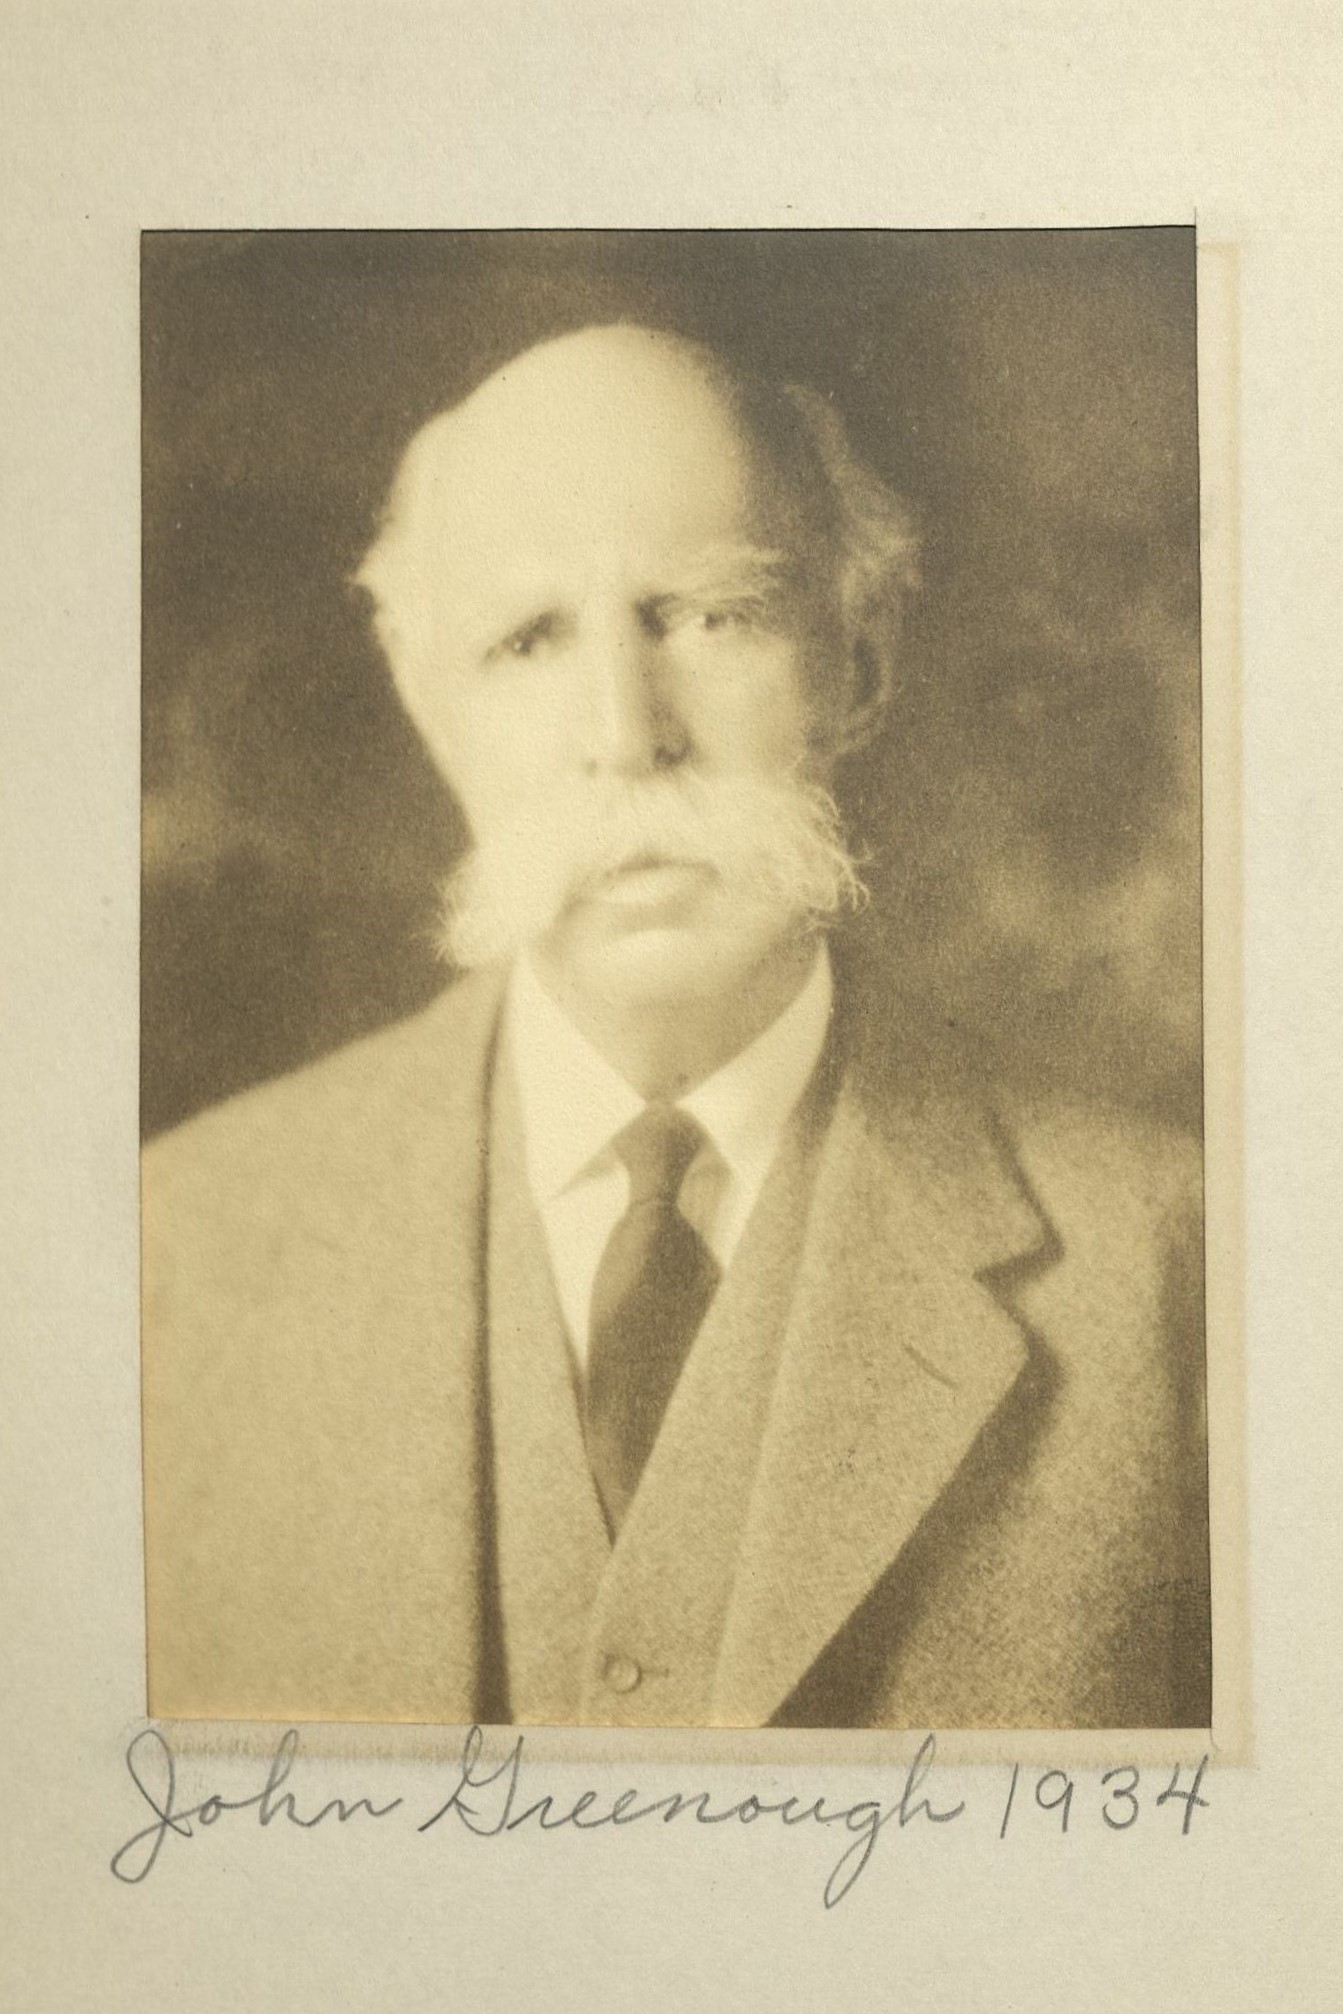 Member portrait of John Greenough